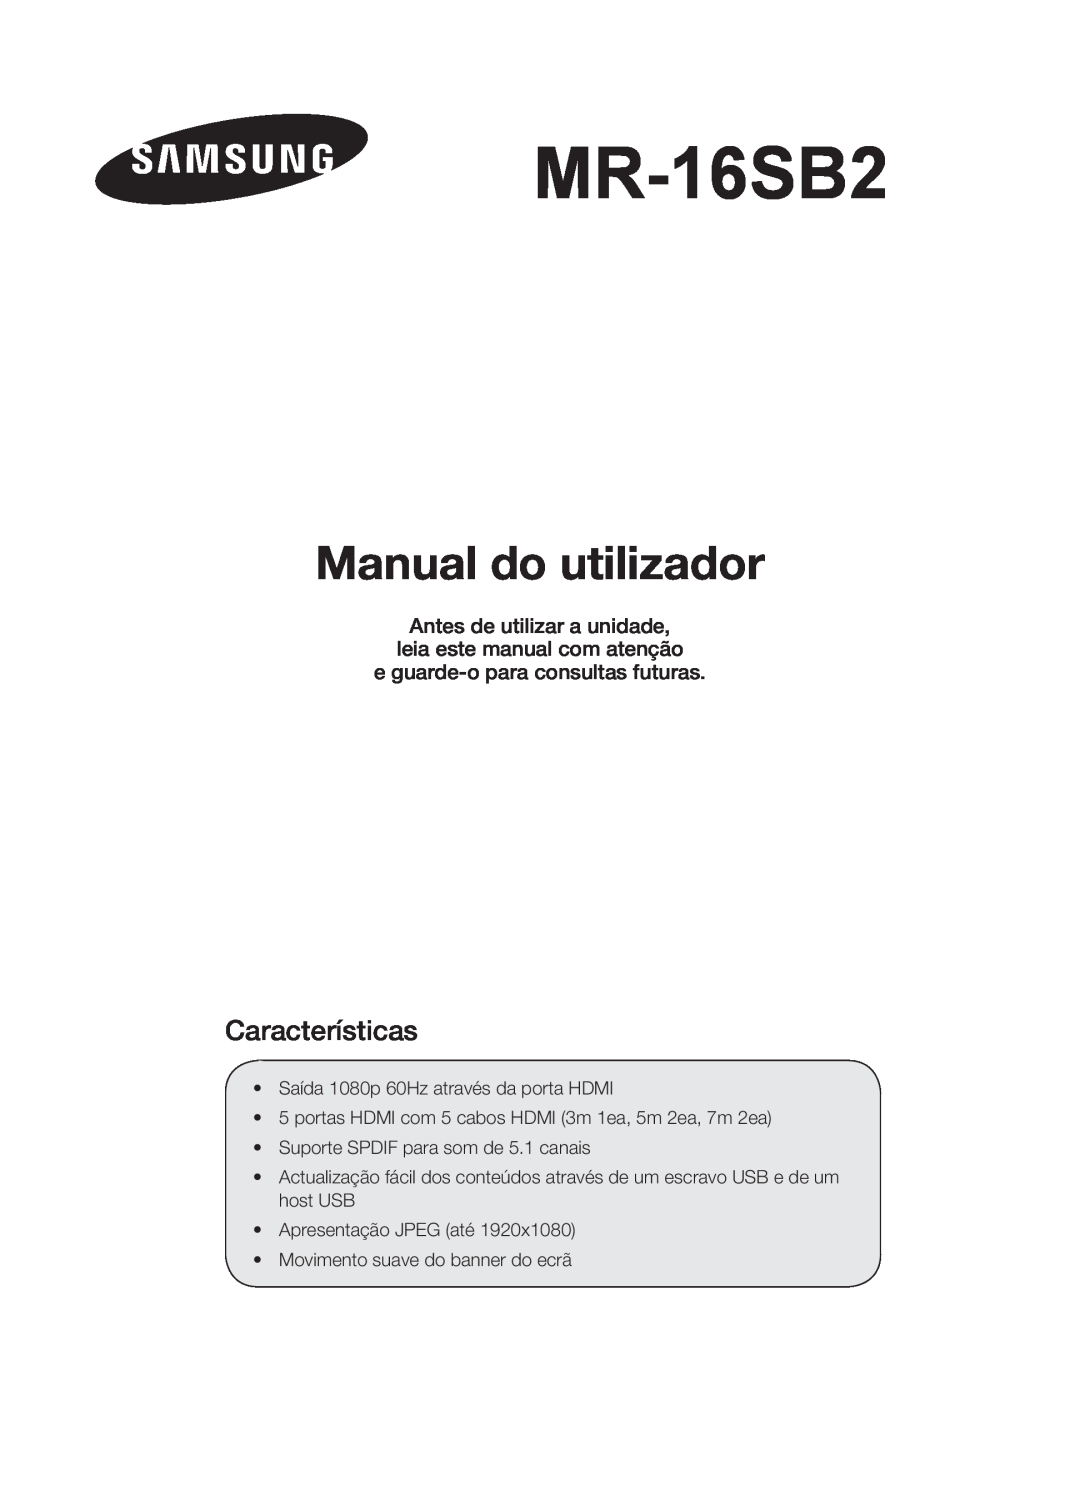 Samsung MR-16SB2 Manual do utilizador, Antes de utilizar a unidade, leia este manual com atenção, Características 